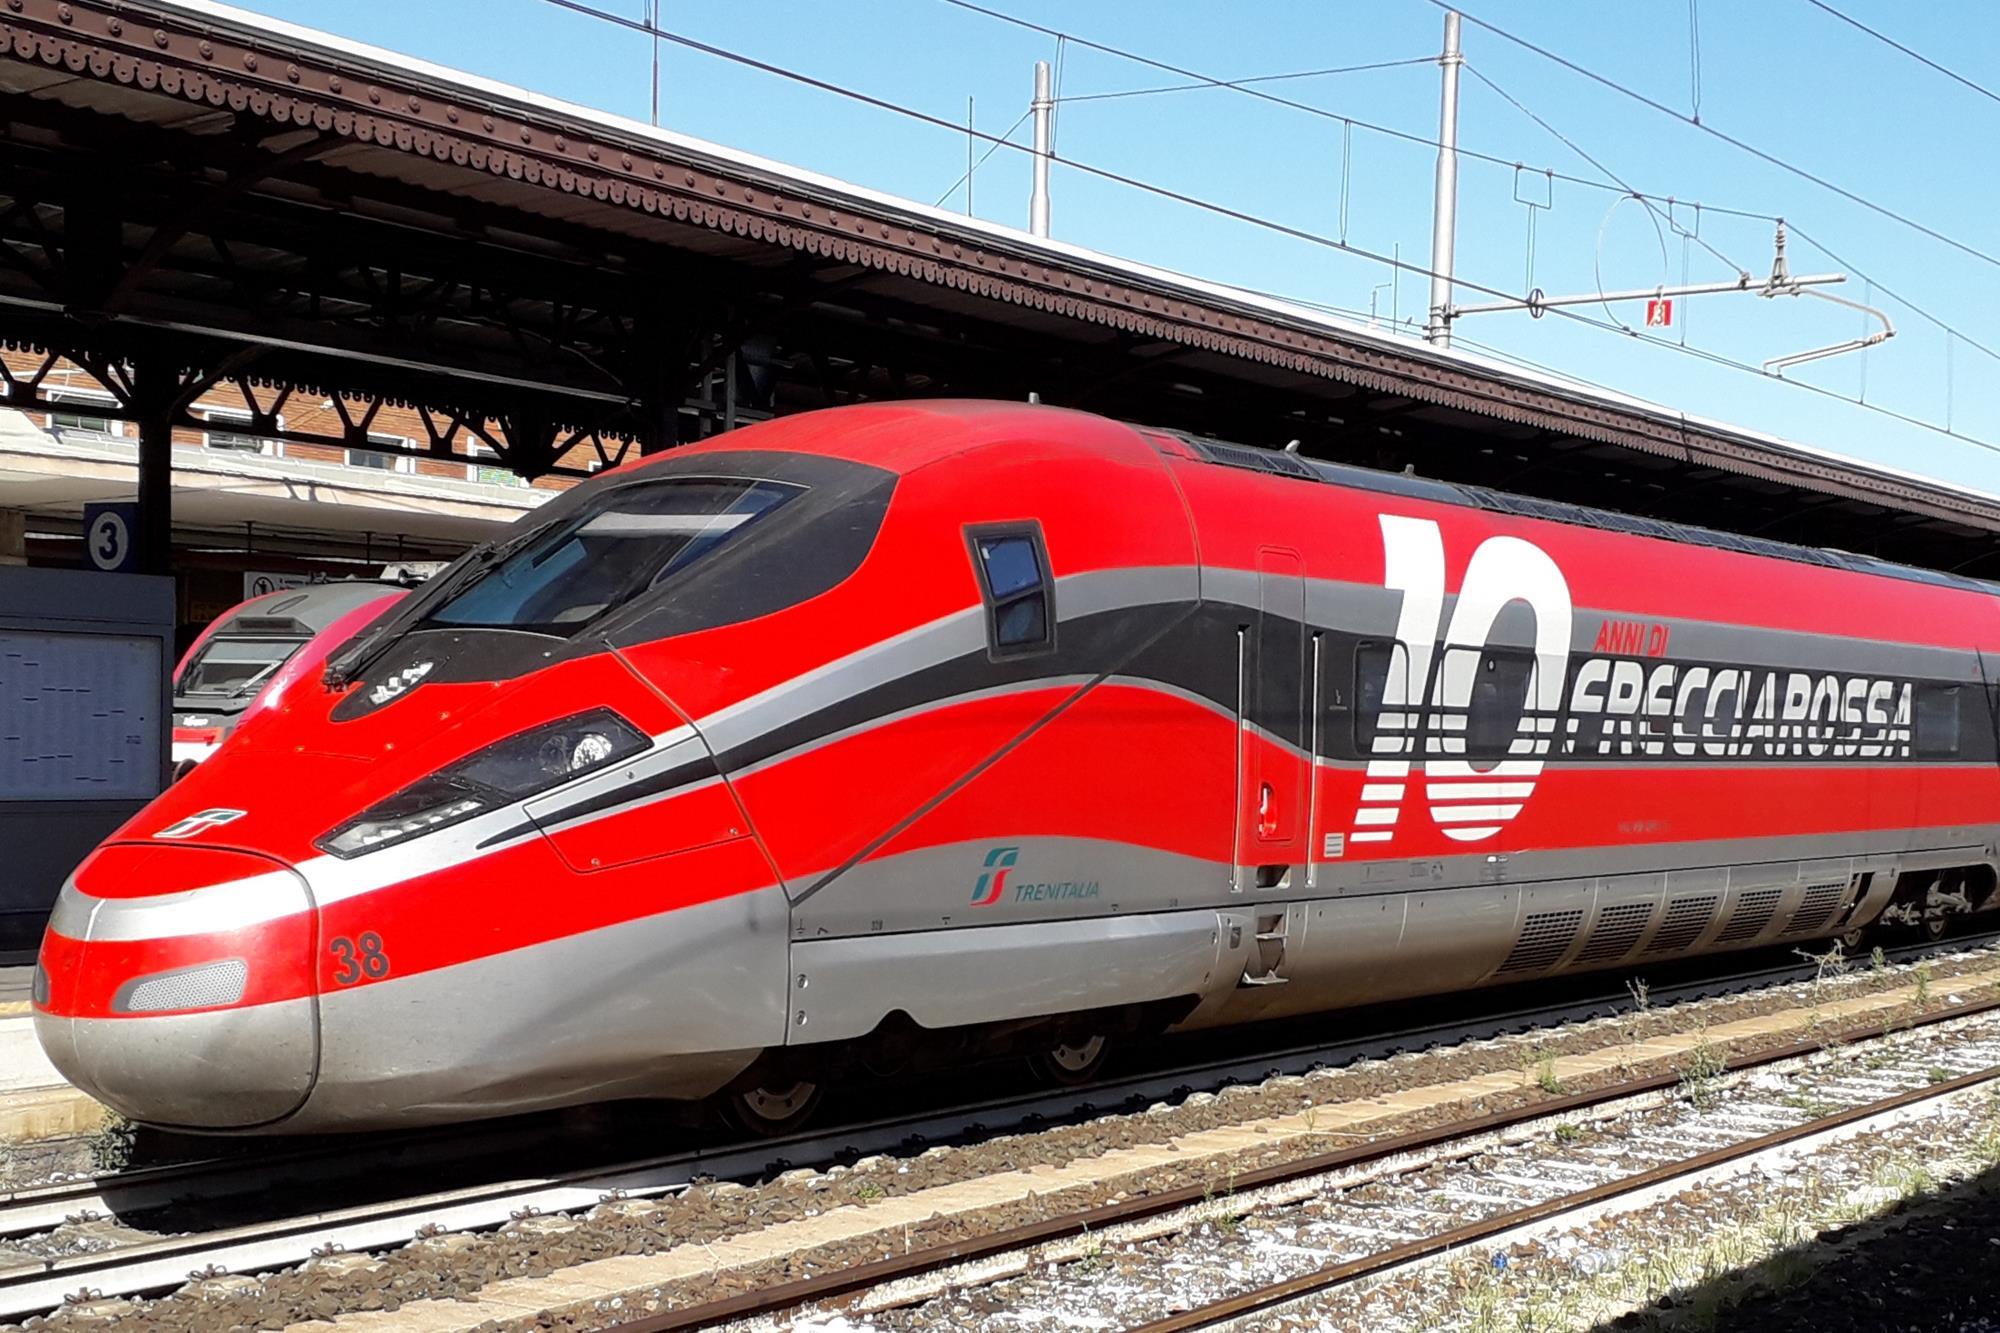 High speed rail wins market share | News | Railway Gazette International